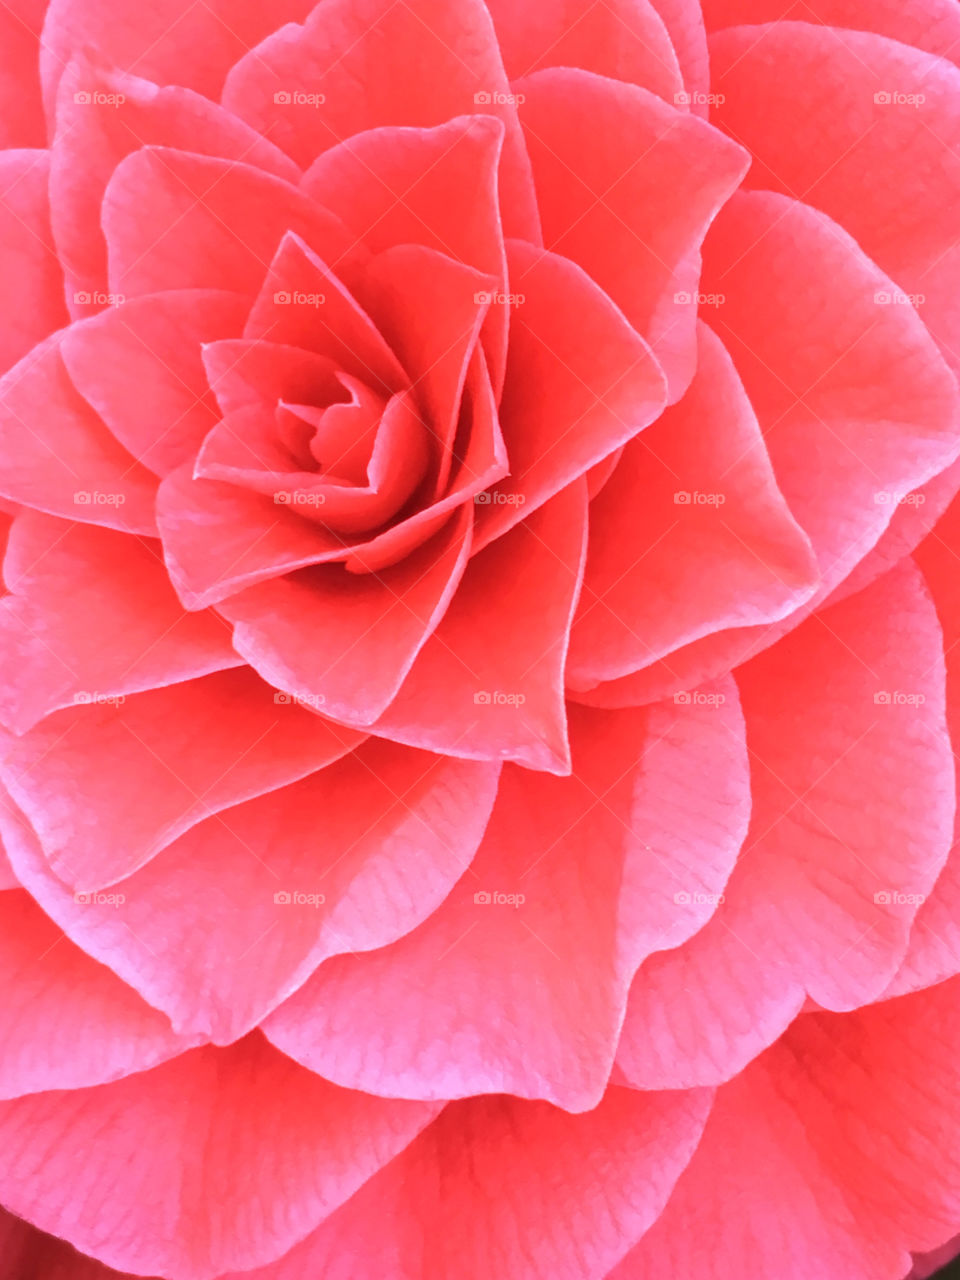 Red camellia 